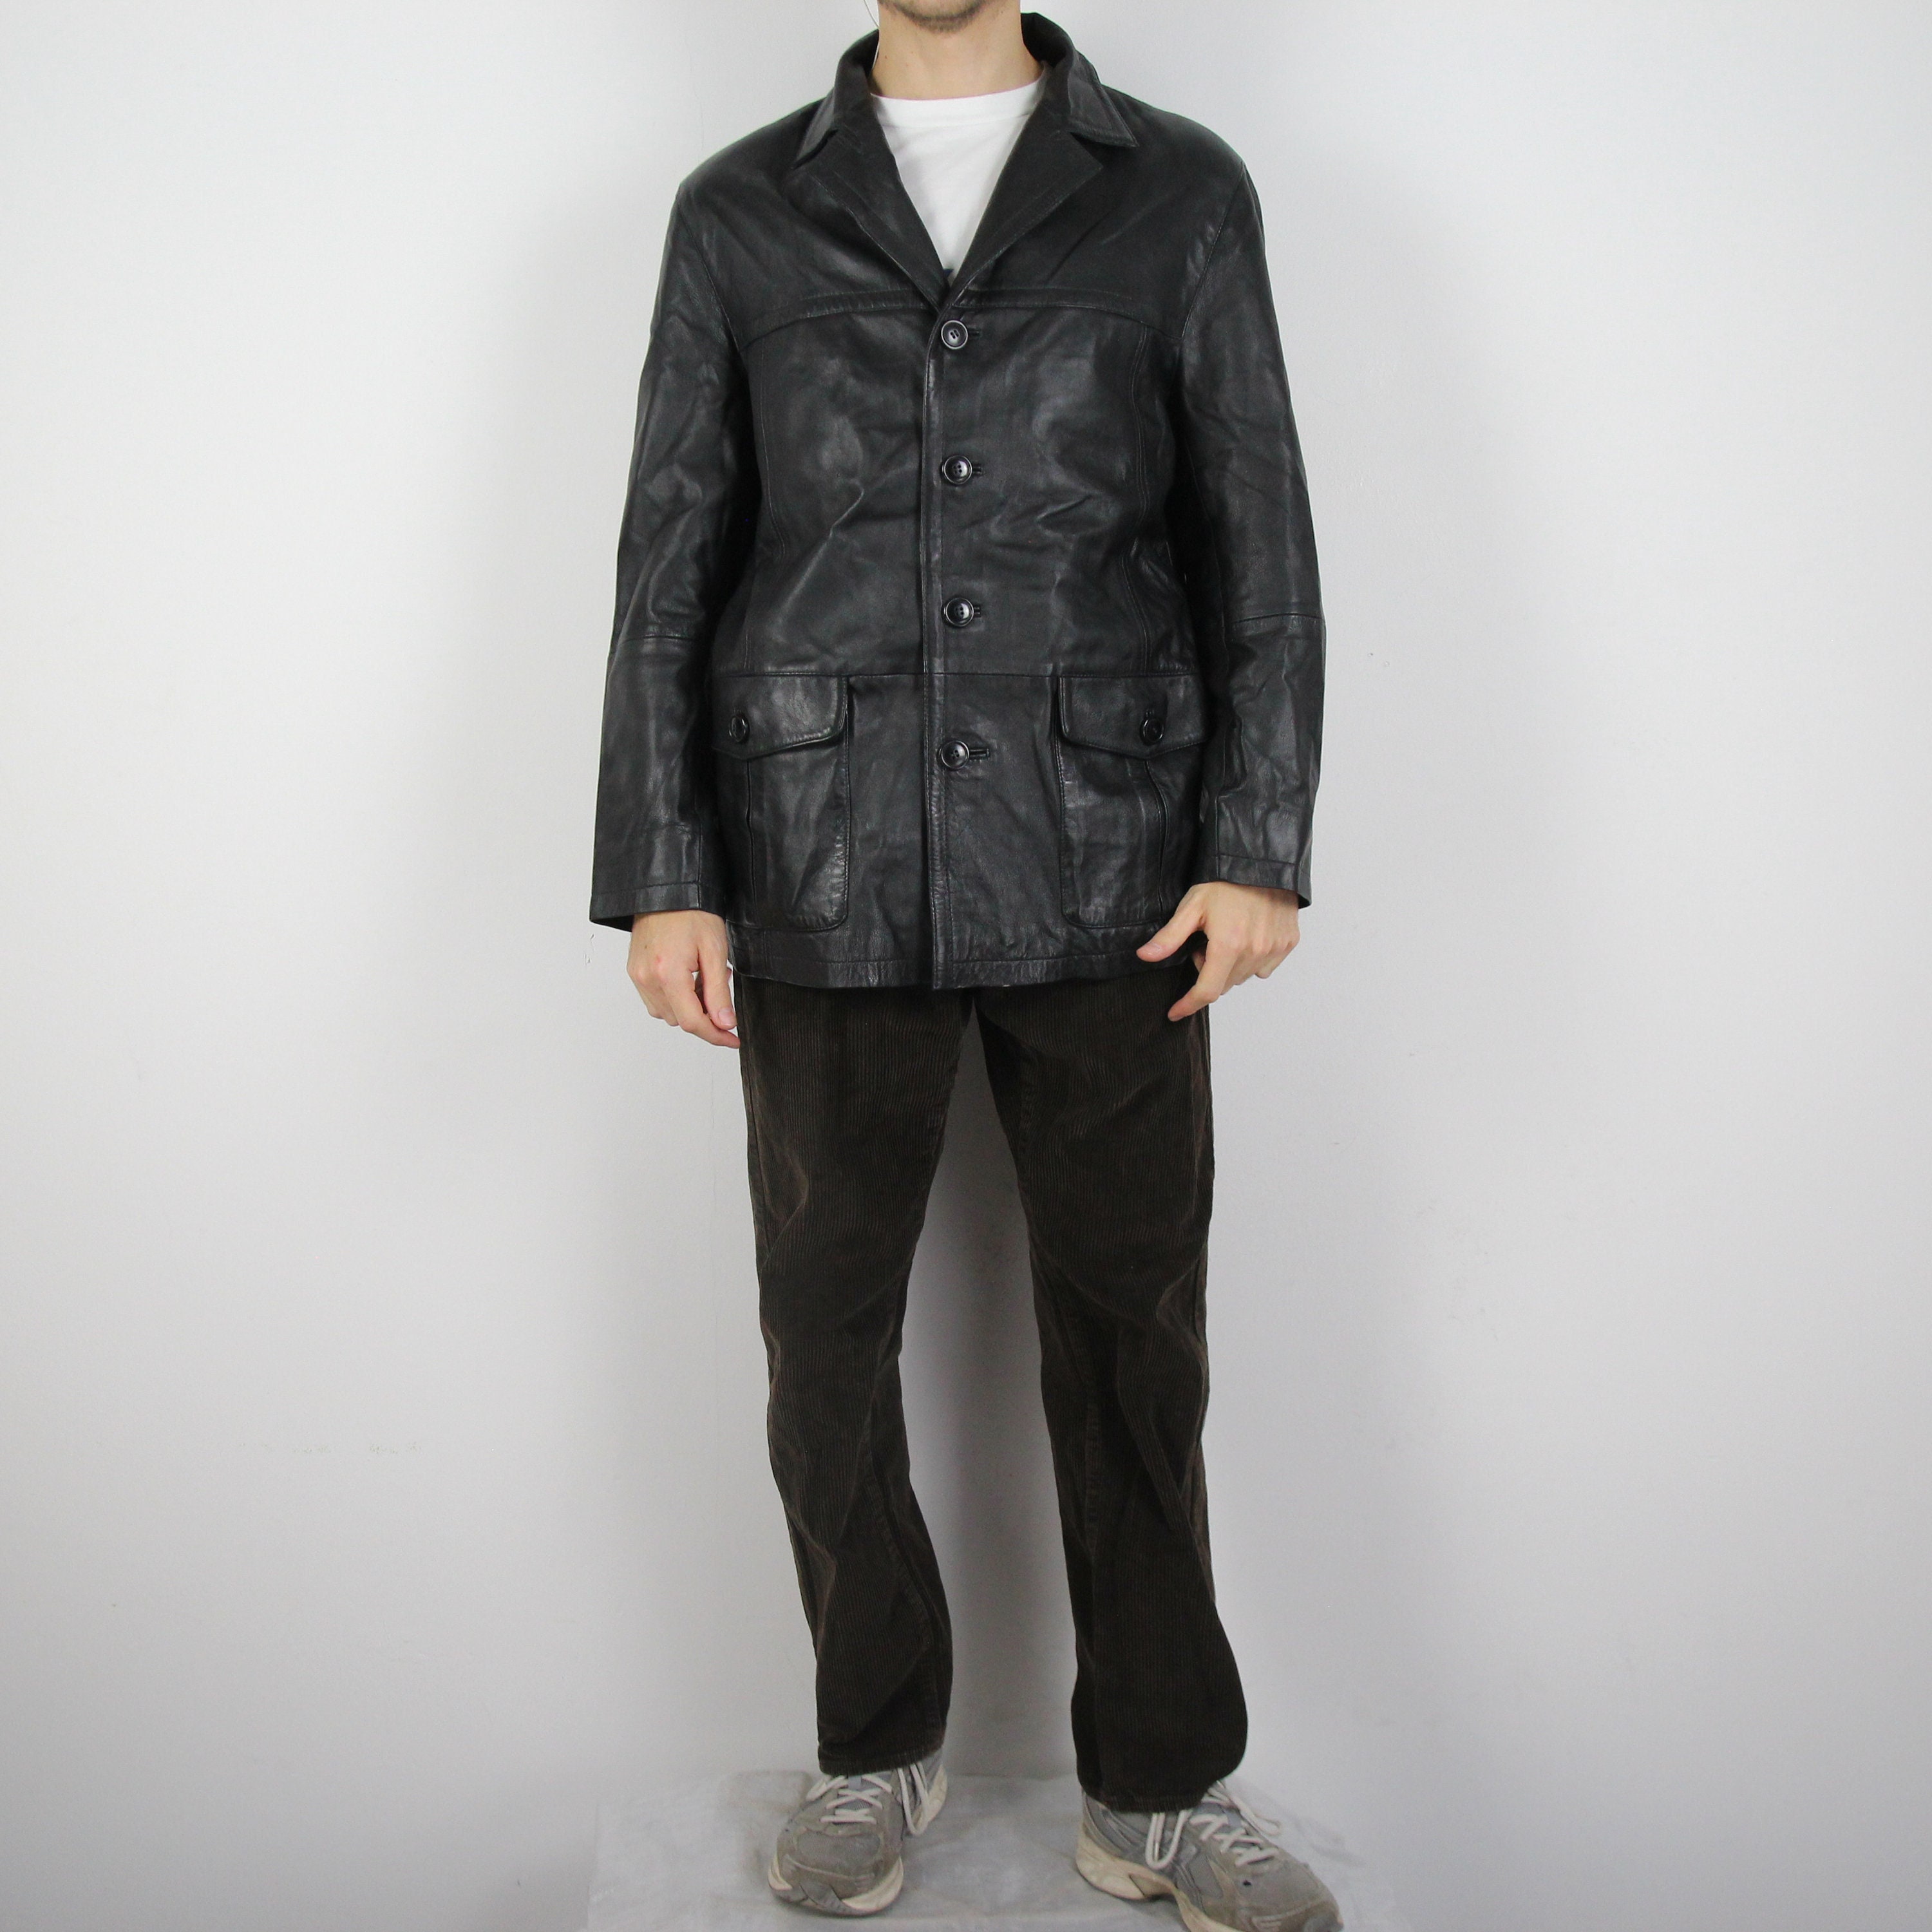 Leather Jacket Etsy Gipsy -